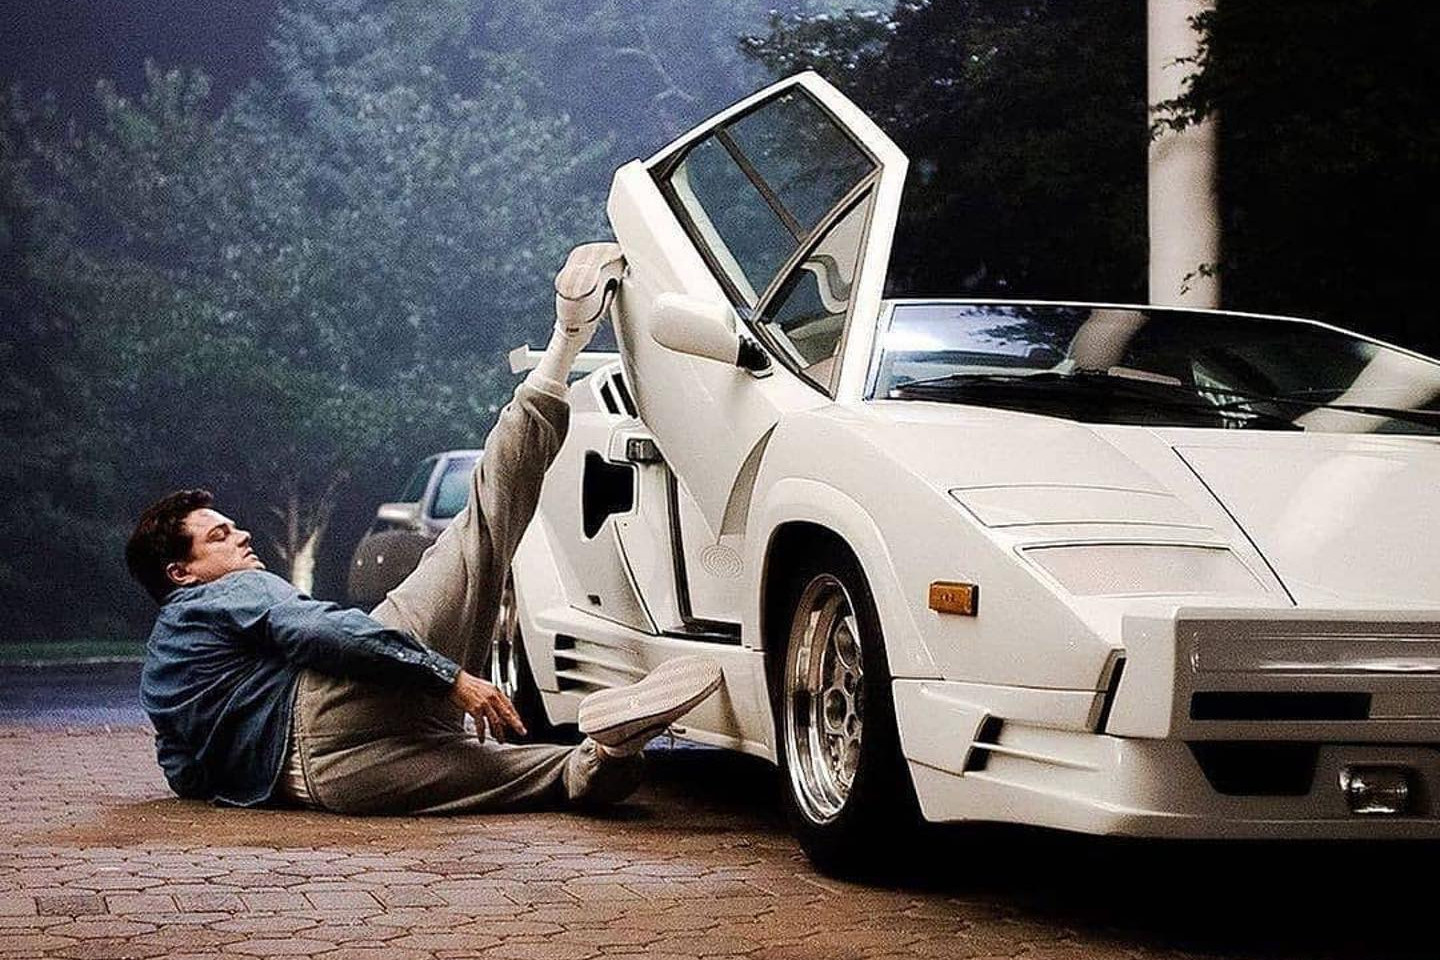 Siêu xe Lamborghini Countach 34 tuổi vỡ nát vẫn được trả giá 1,35 triệu USD